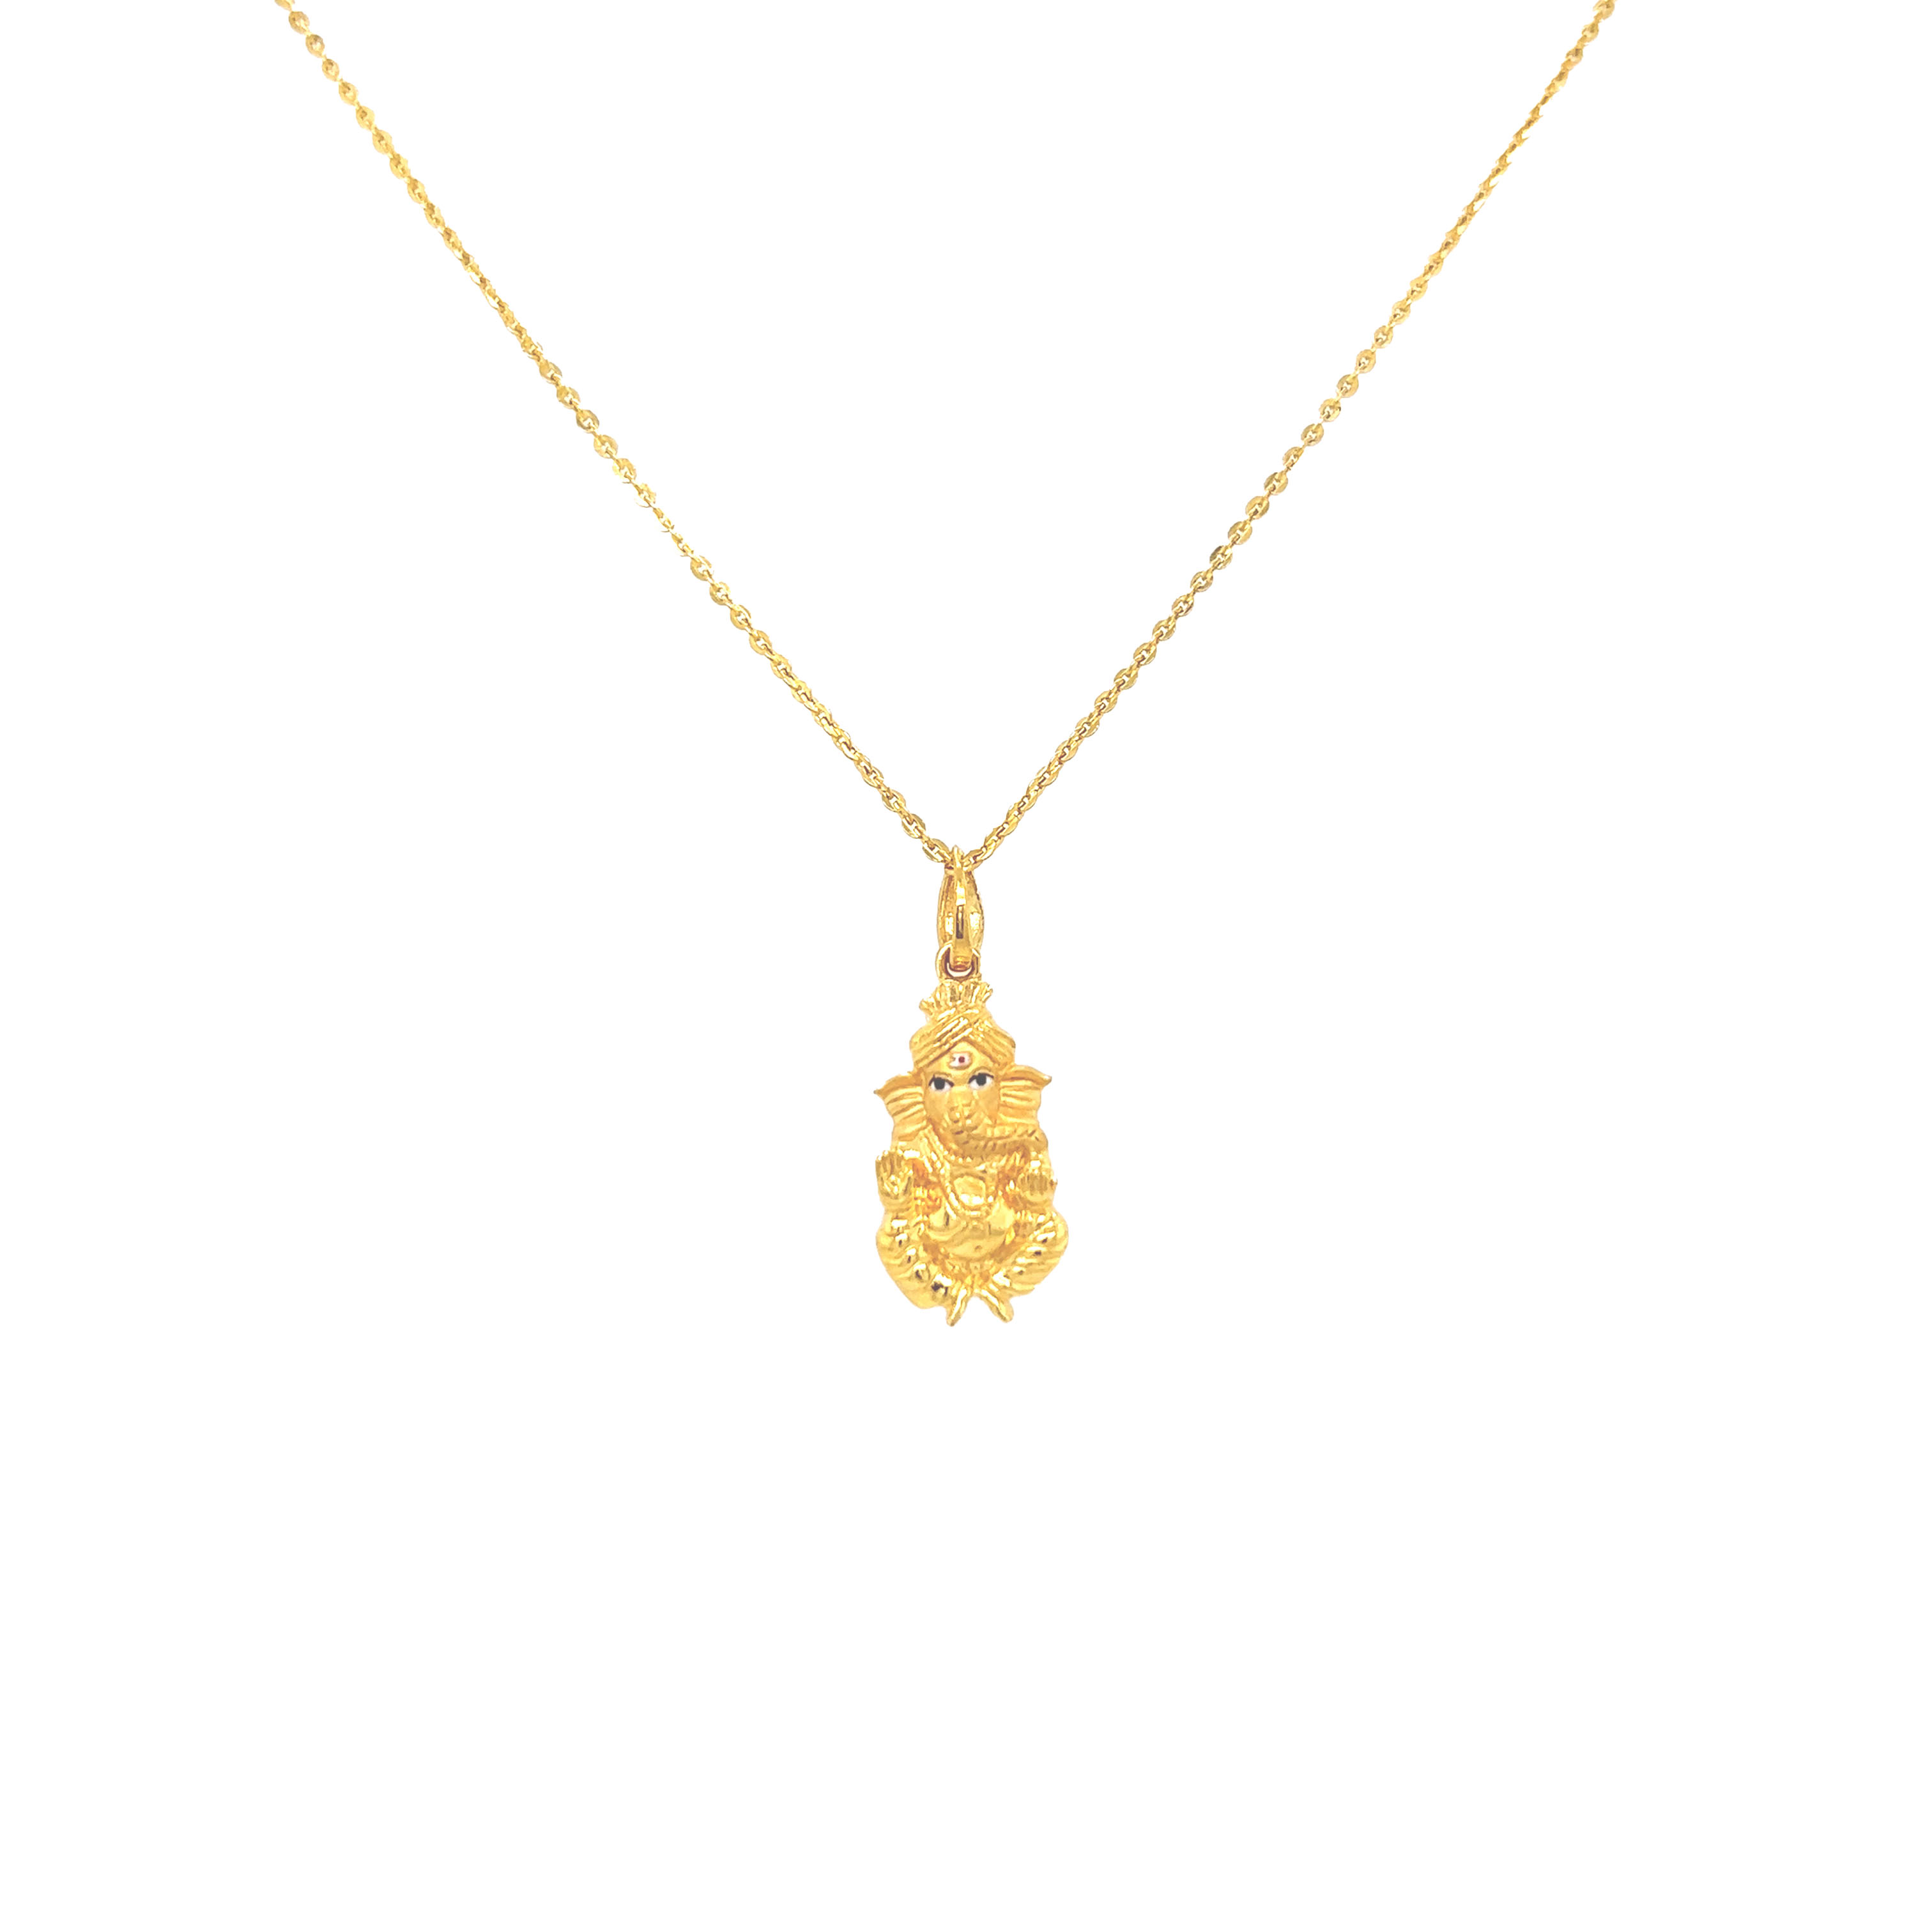 Prathmeshawara Gold Pendant